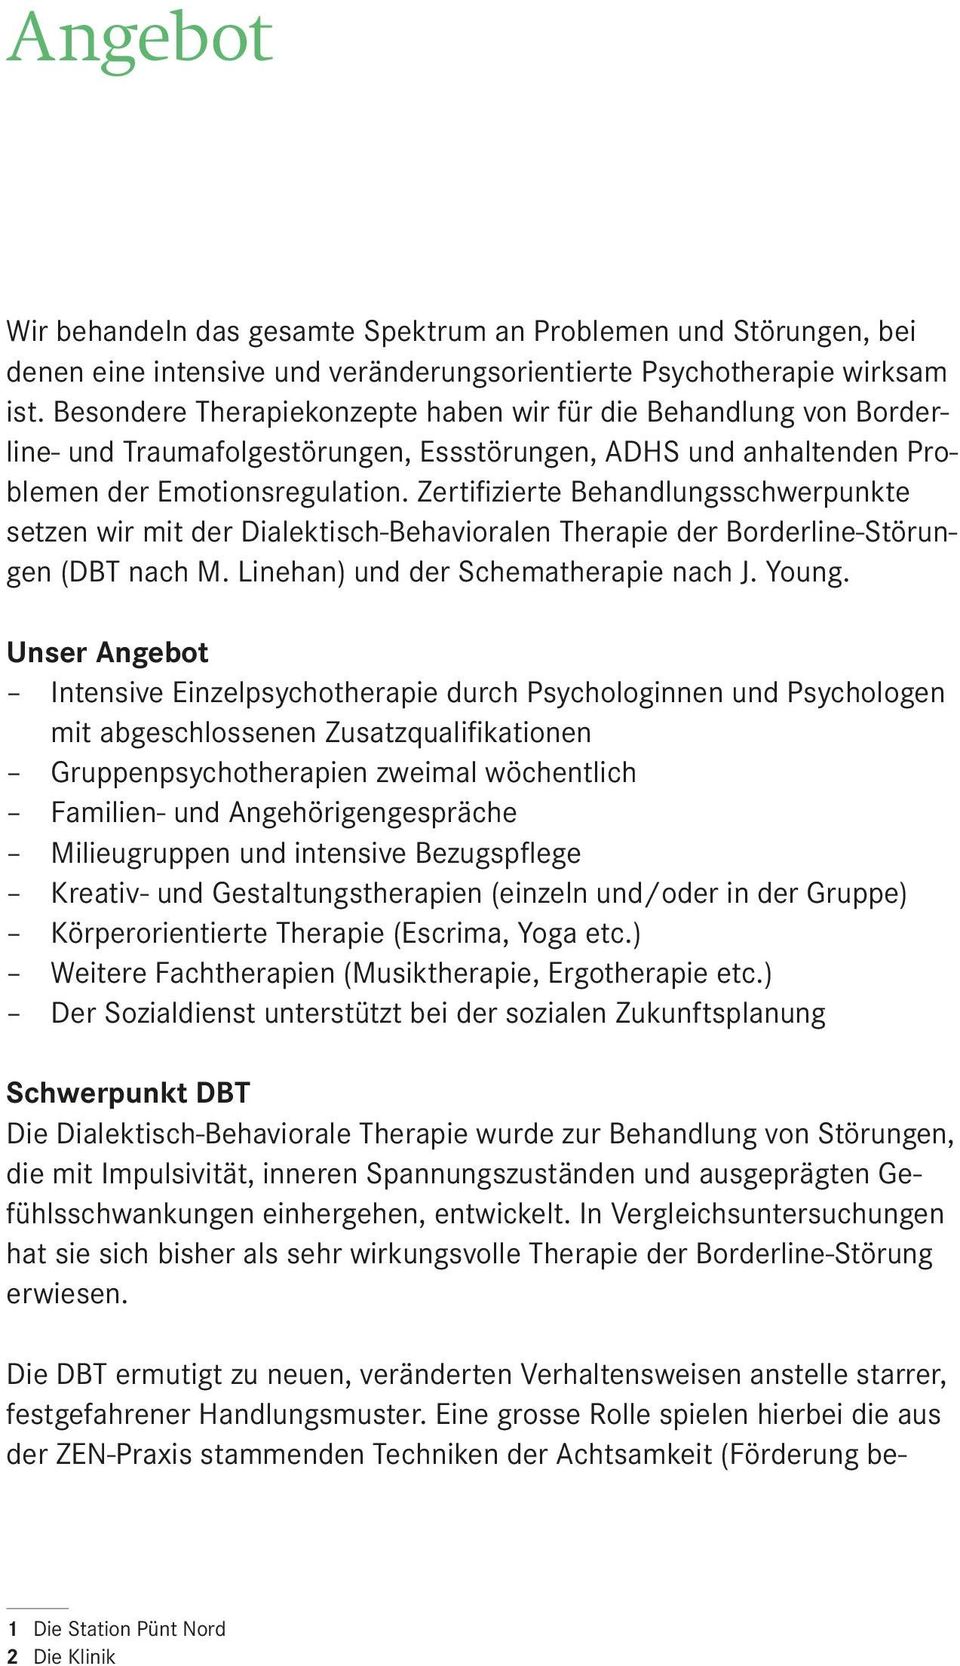 Zertifizierte Behandlungsschwerpunkte setzen wir mit der Dialektisch-Behavioralen Therapie der Borderline-Störungen (DBT nach M. Linehan) und der Schematherapie nach J. Young.